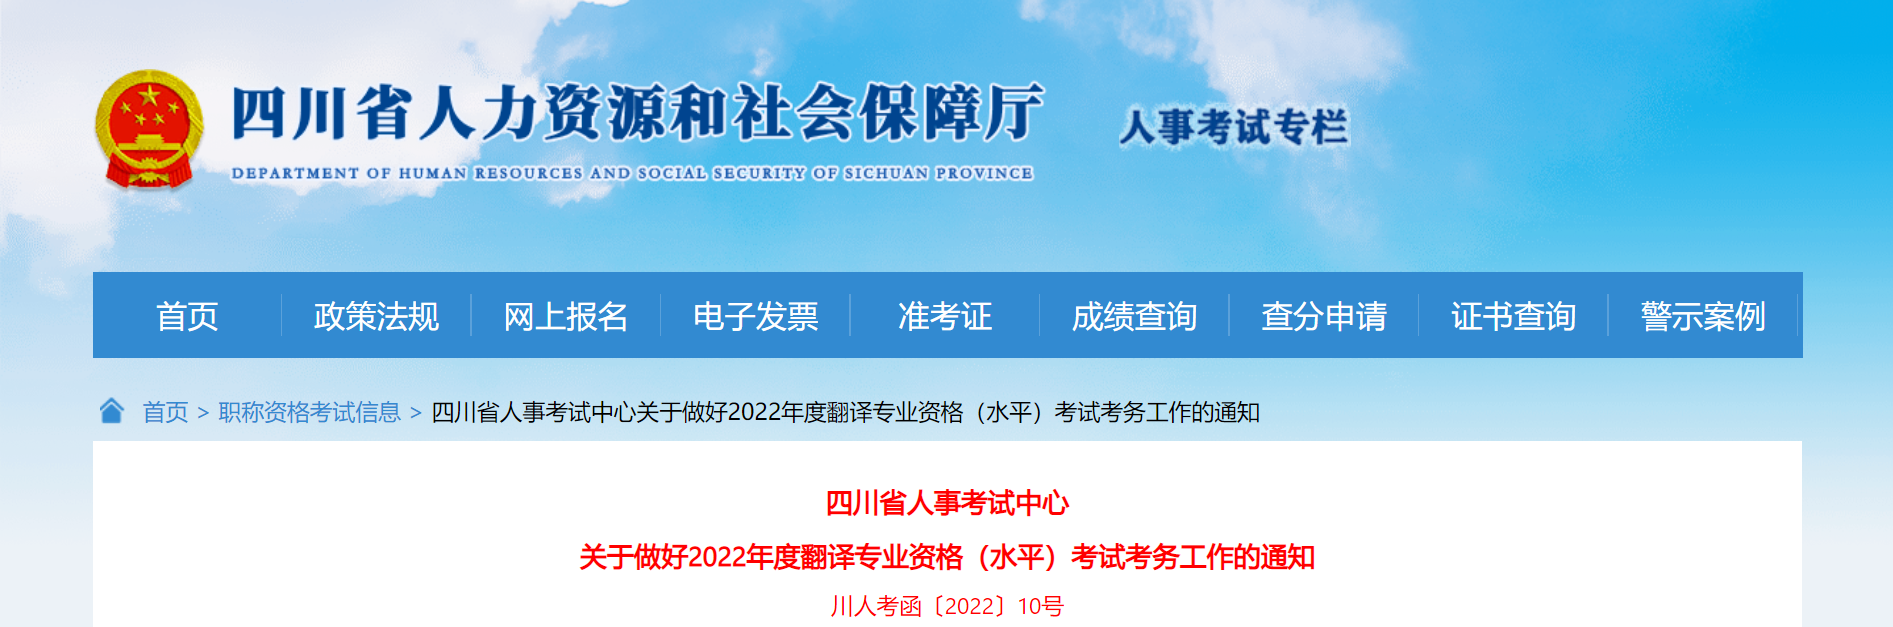 2022年四川翻译专业资格考试报名时间、条件及入口【上半年4月7日起 下半年8月31日起】